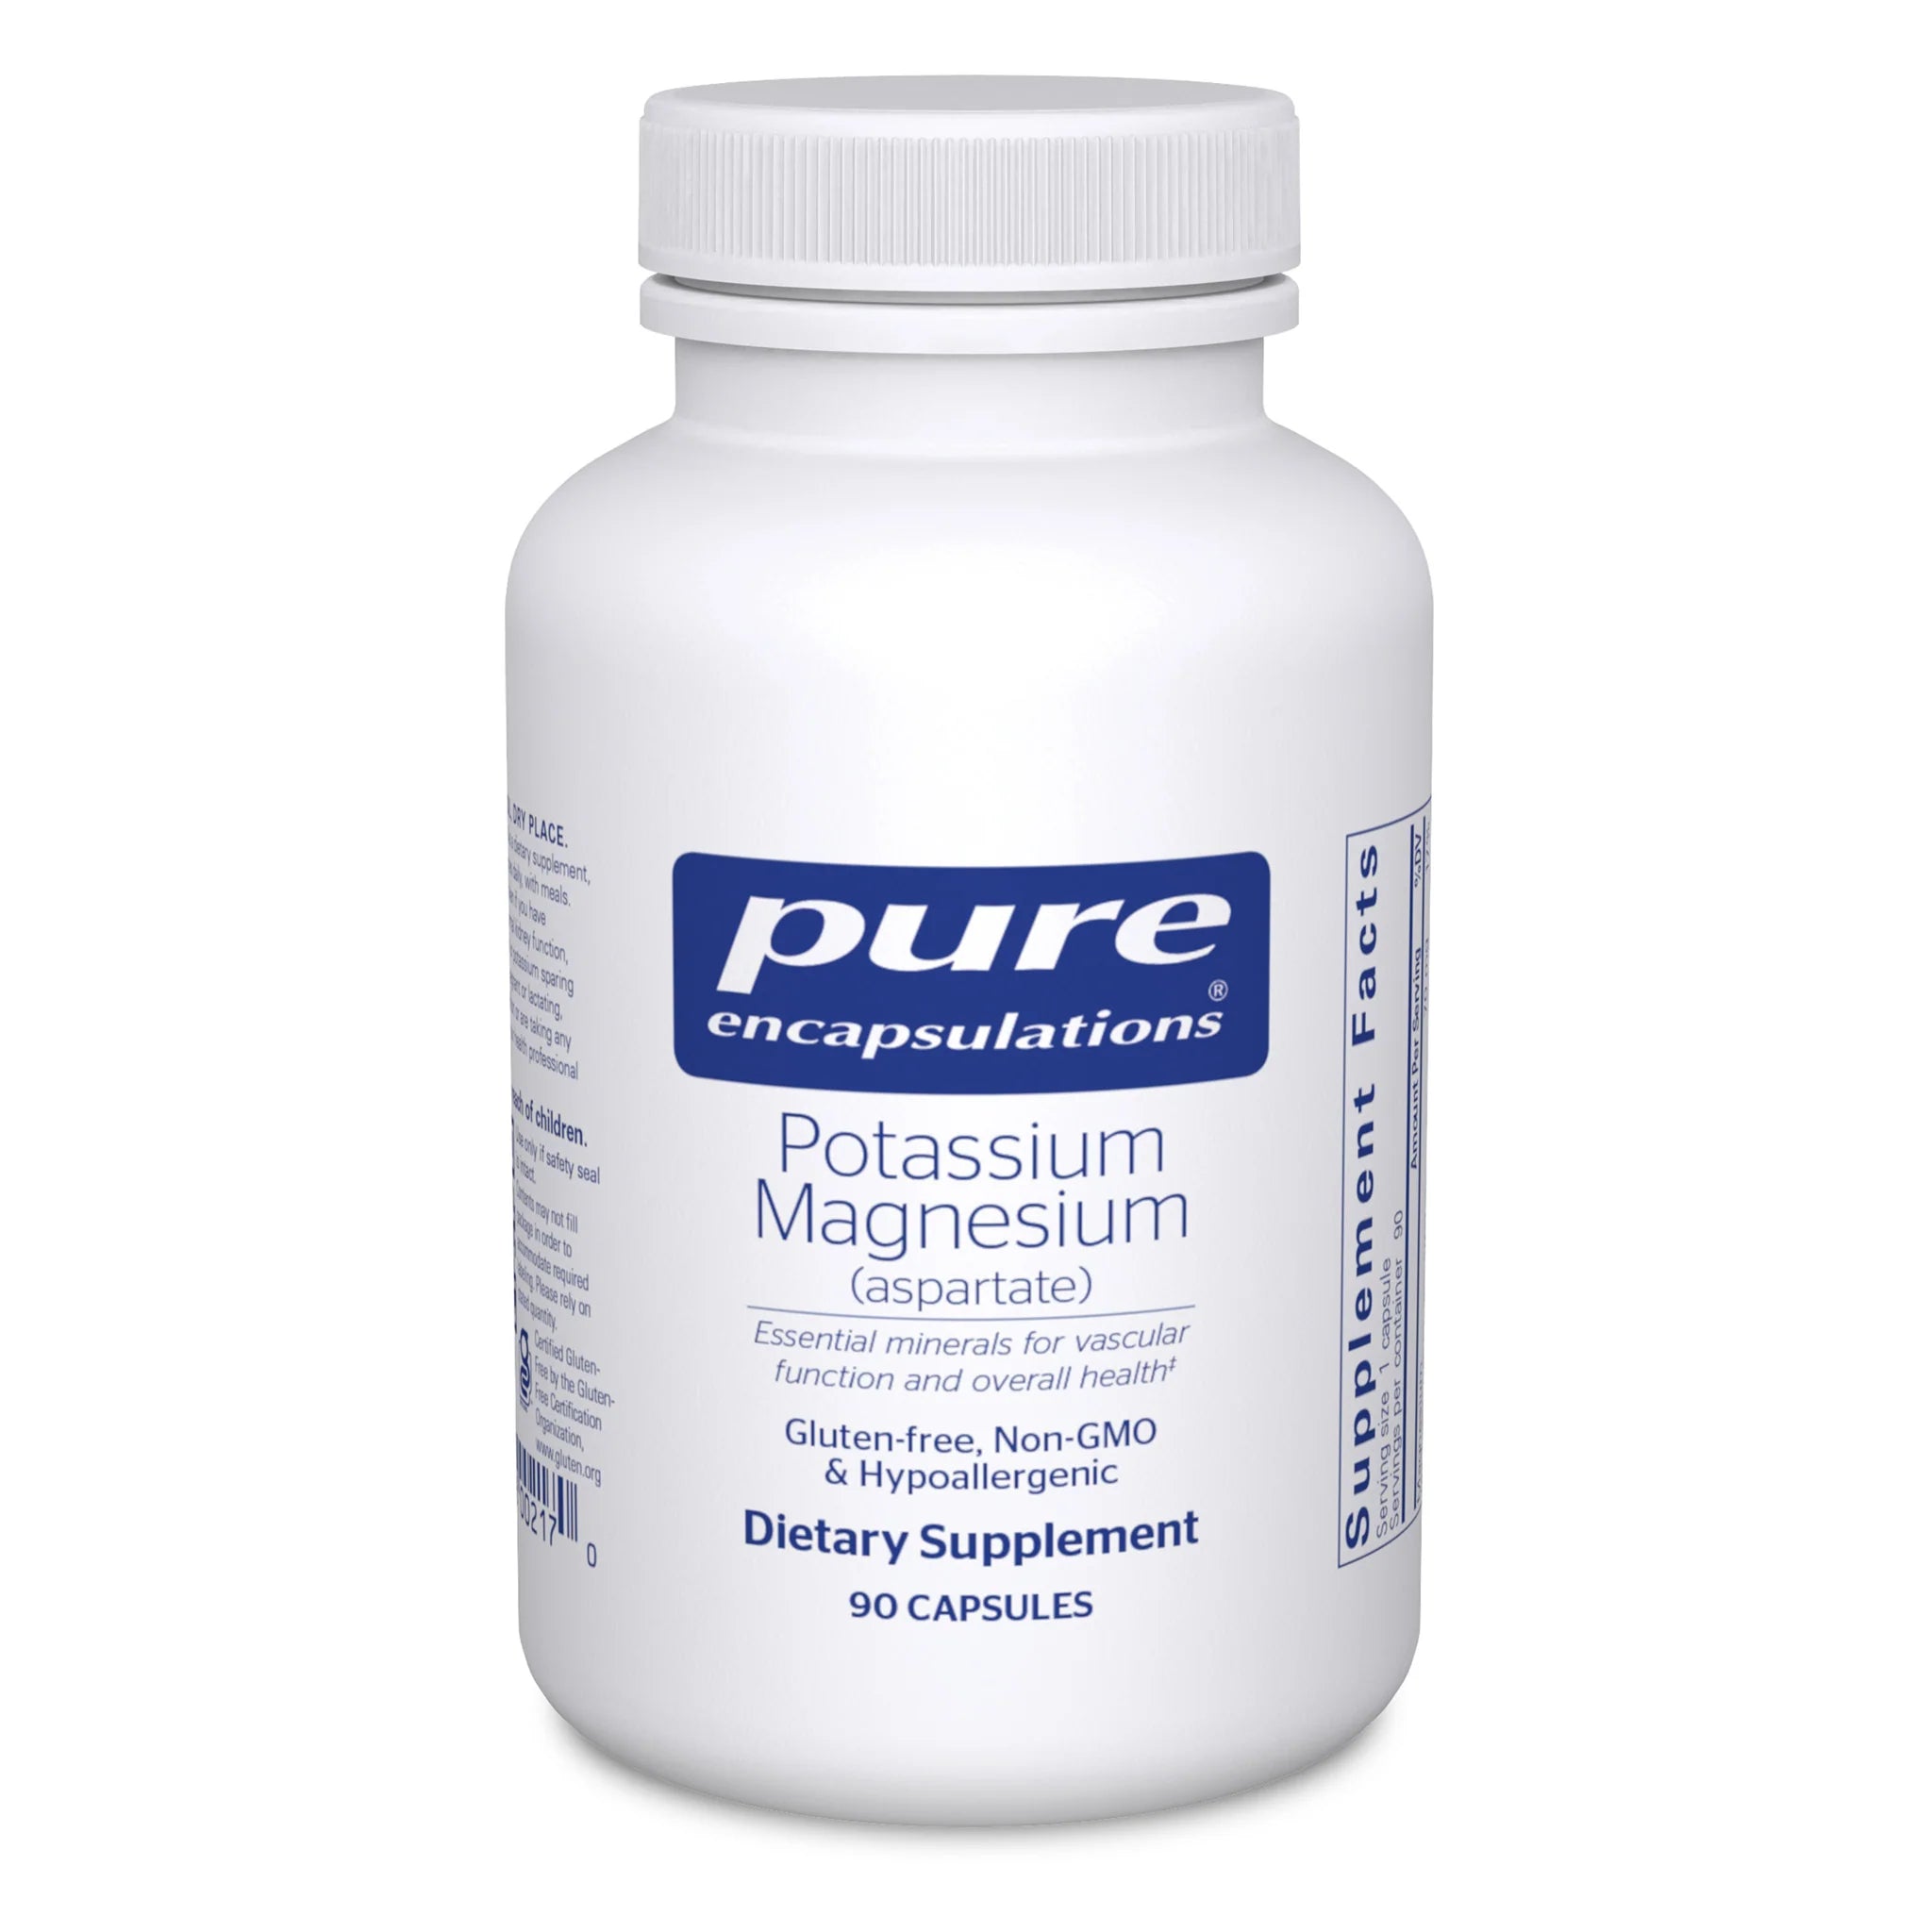 Potassium Magnesium (Aspartate)